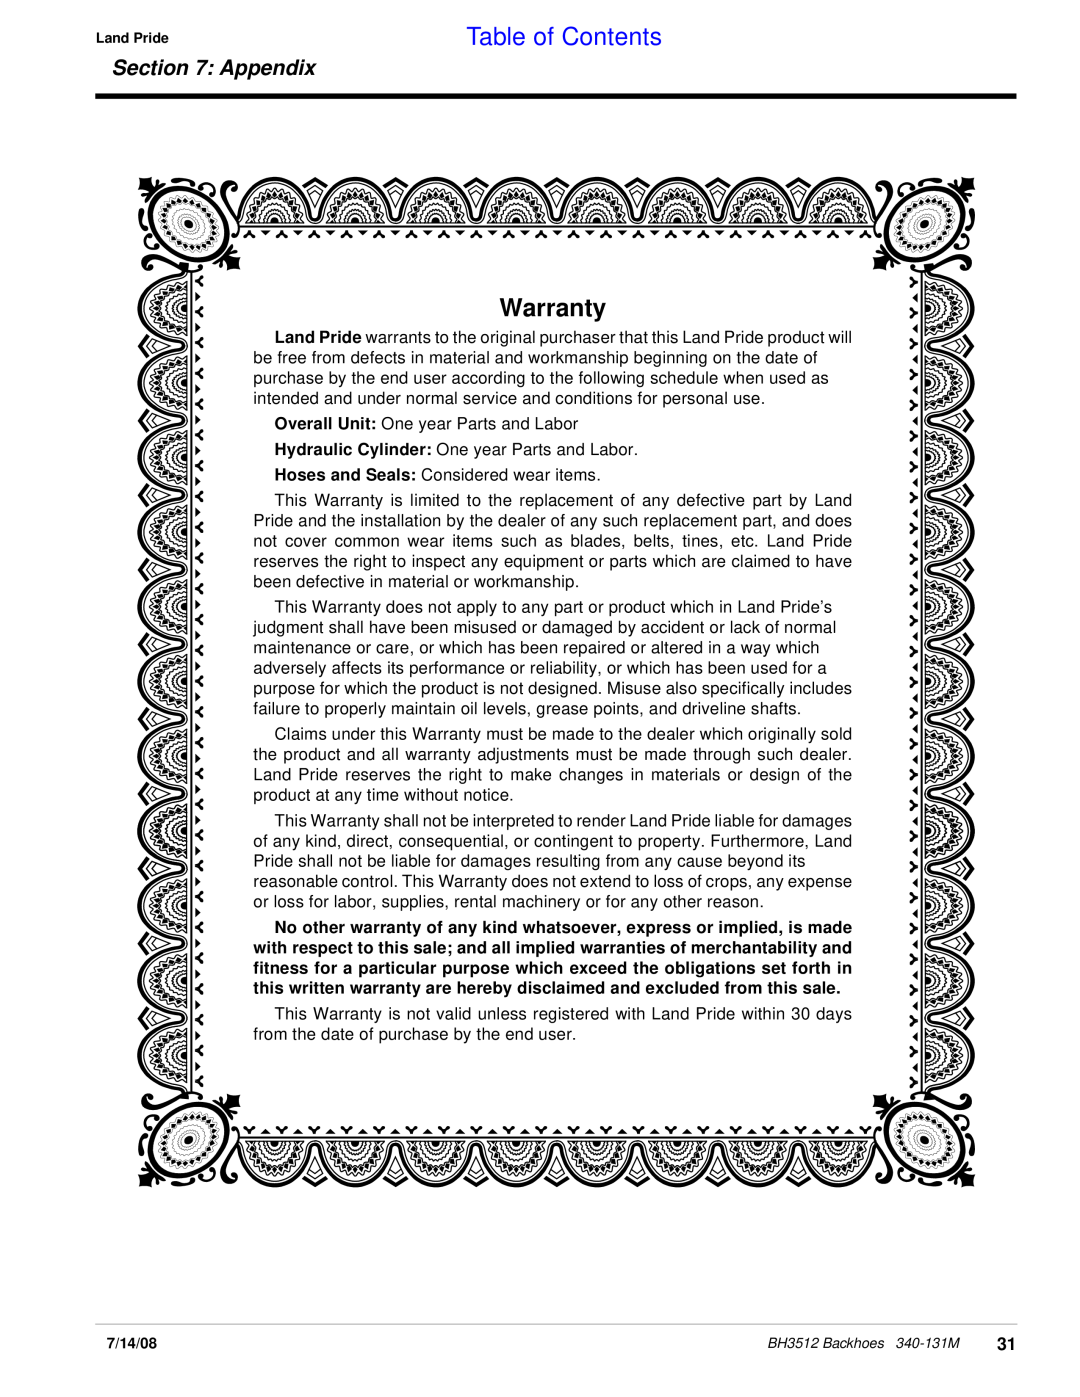 Land Pride BH3512 manual Warranty, Table of Contents, Appendix 